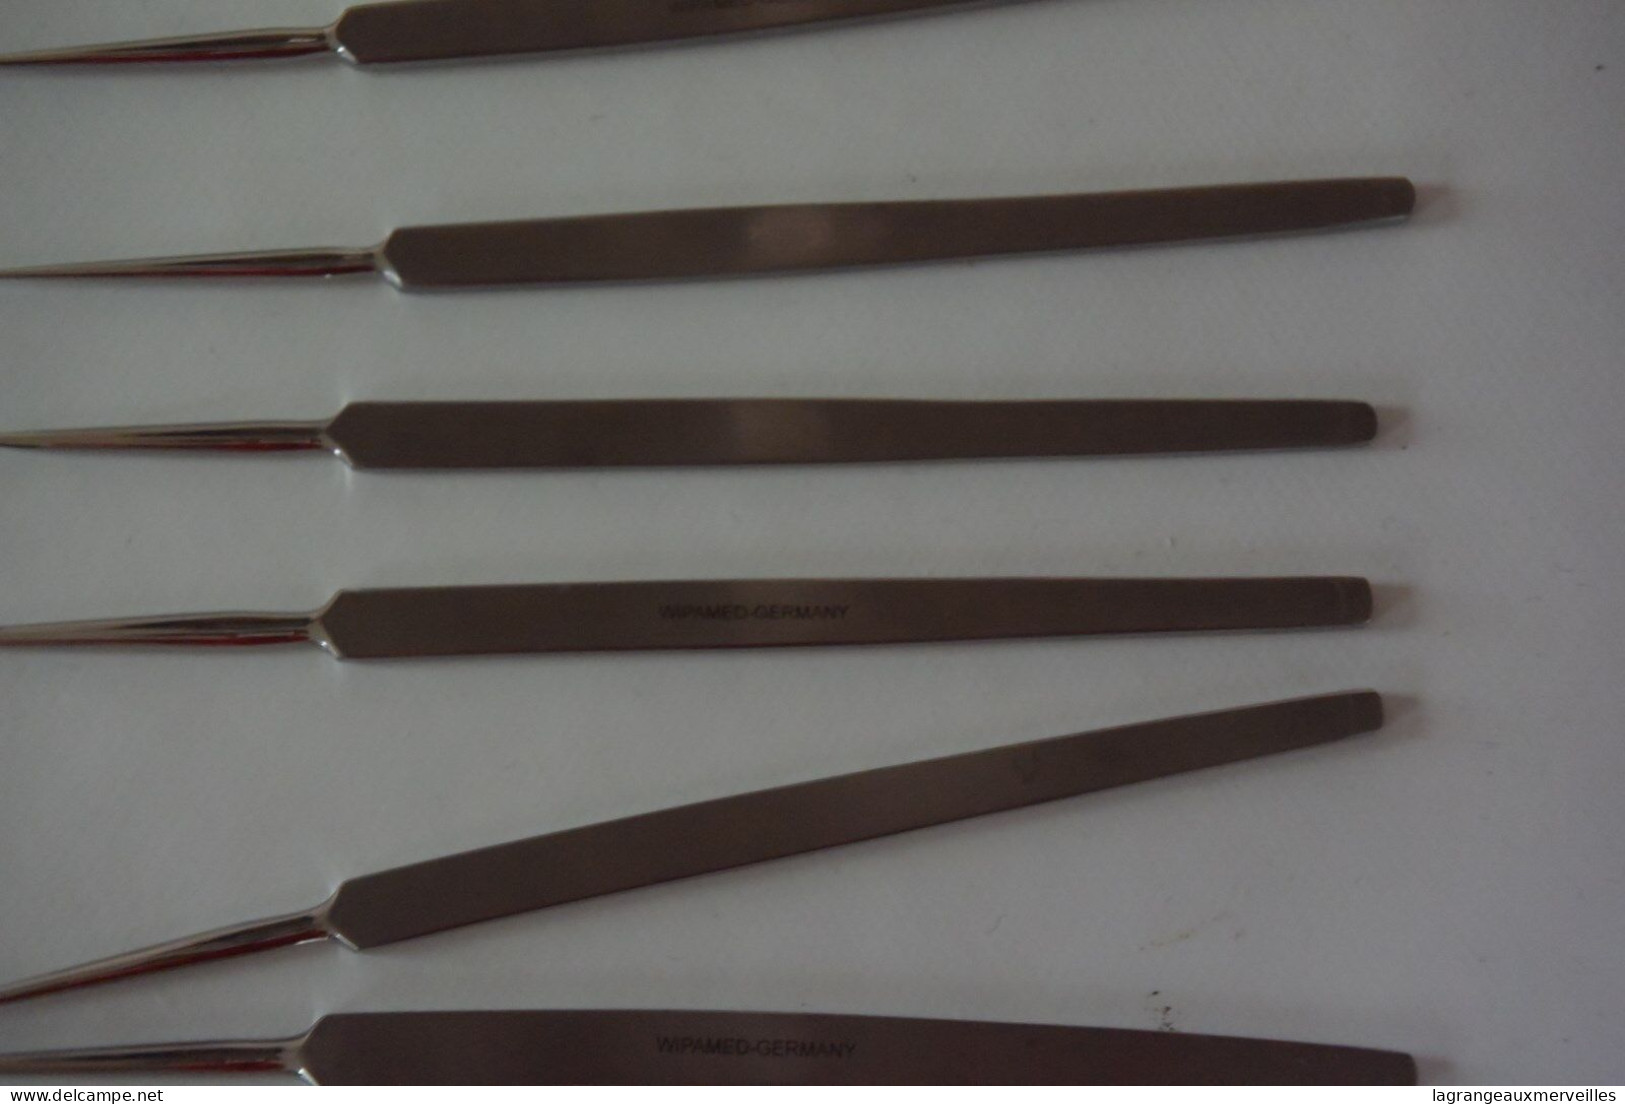 C122 33 anciens outils de médecine WIPAMED GERMANY ciseau coupe ongle scalpel - outil de métier